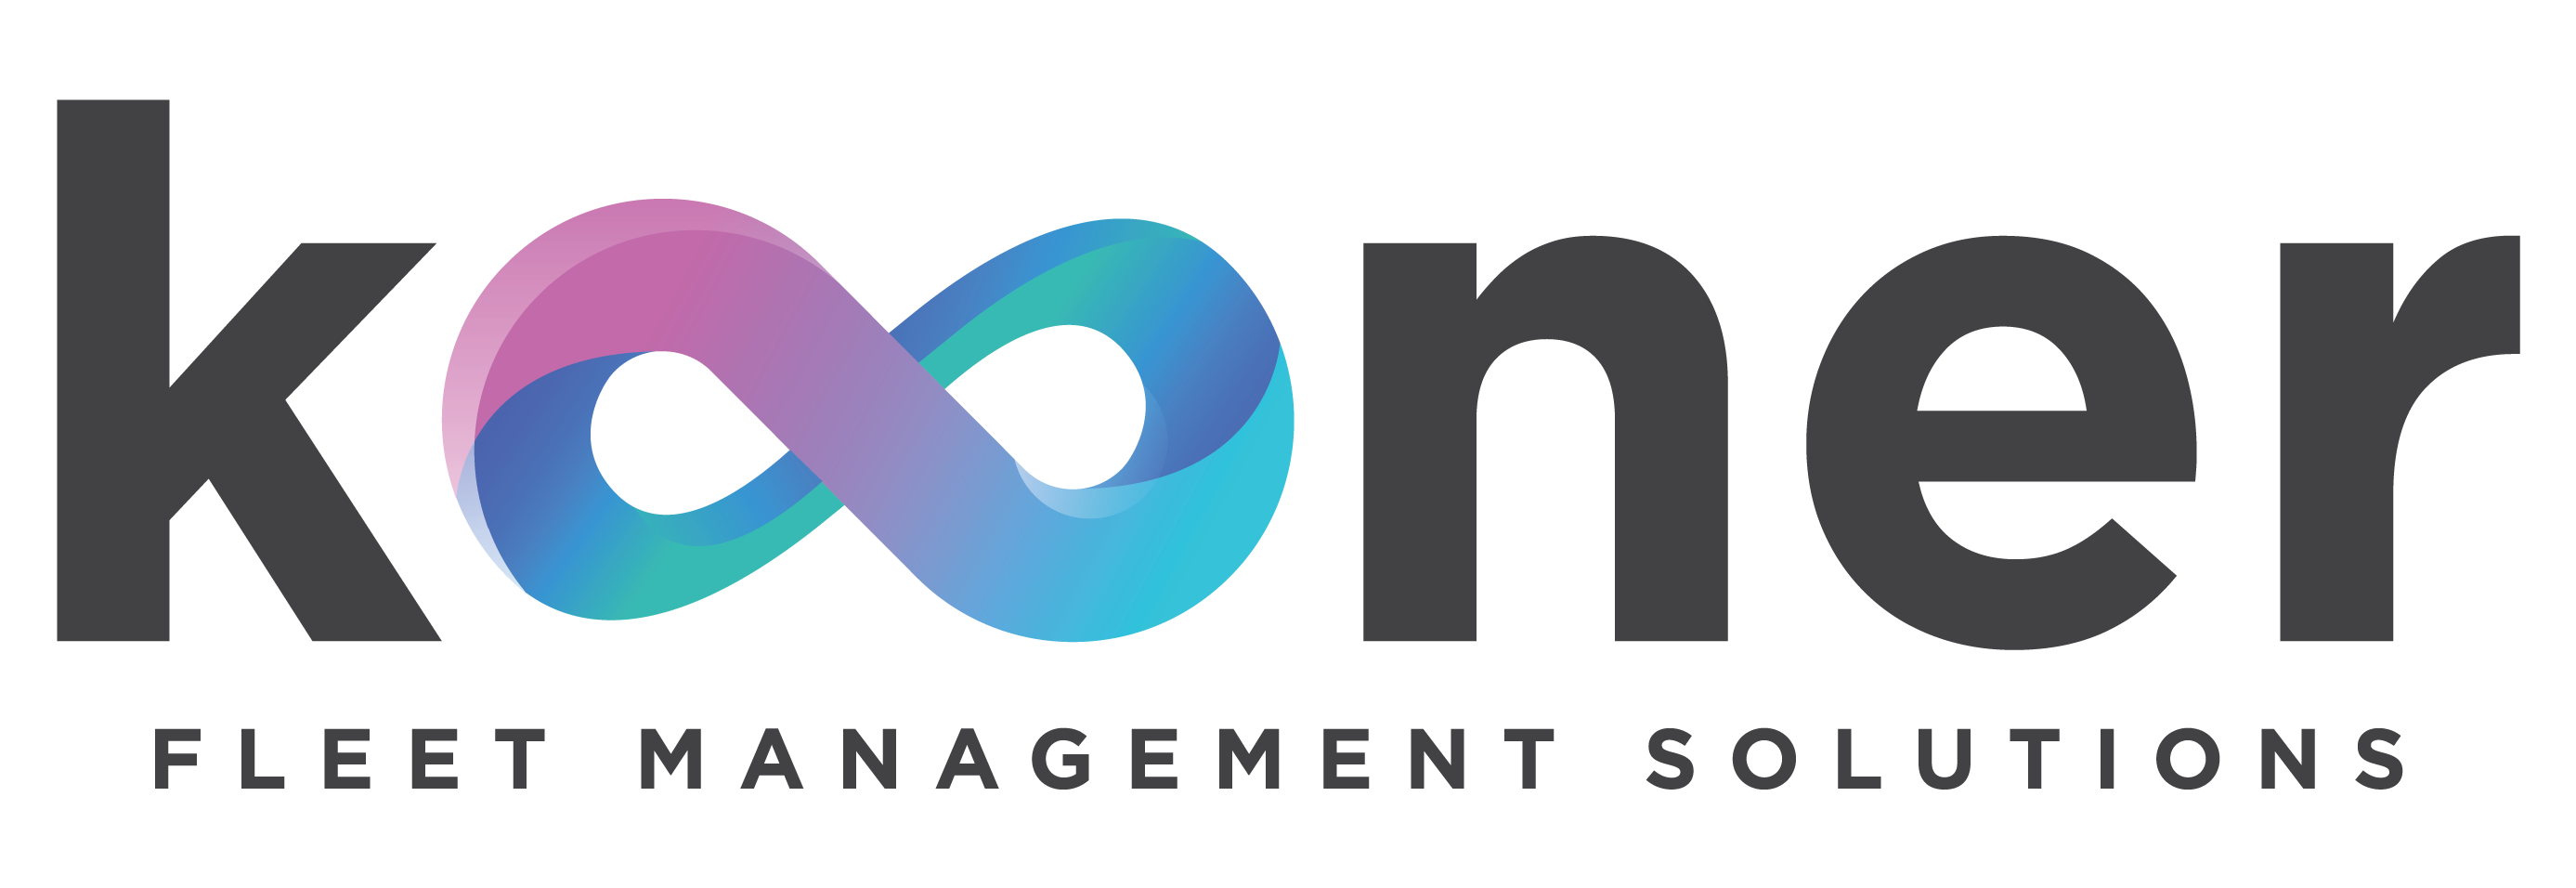 Kooner logo - navigation